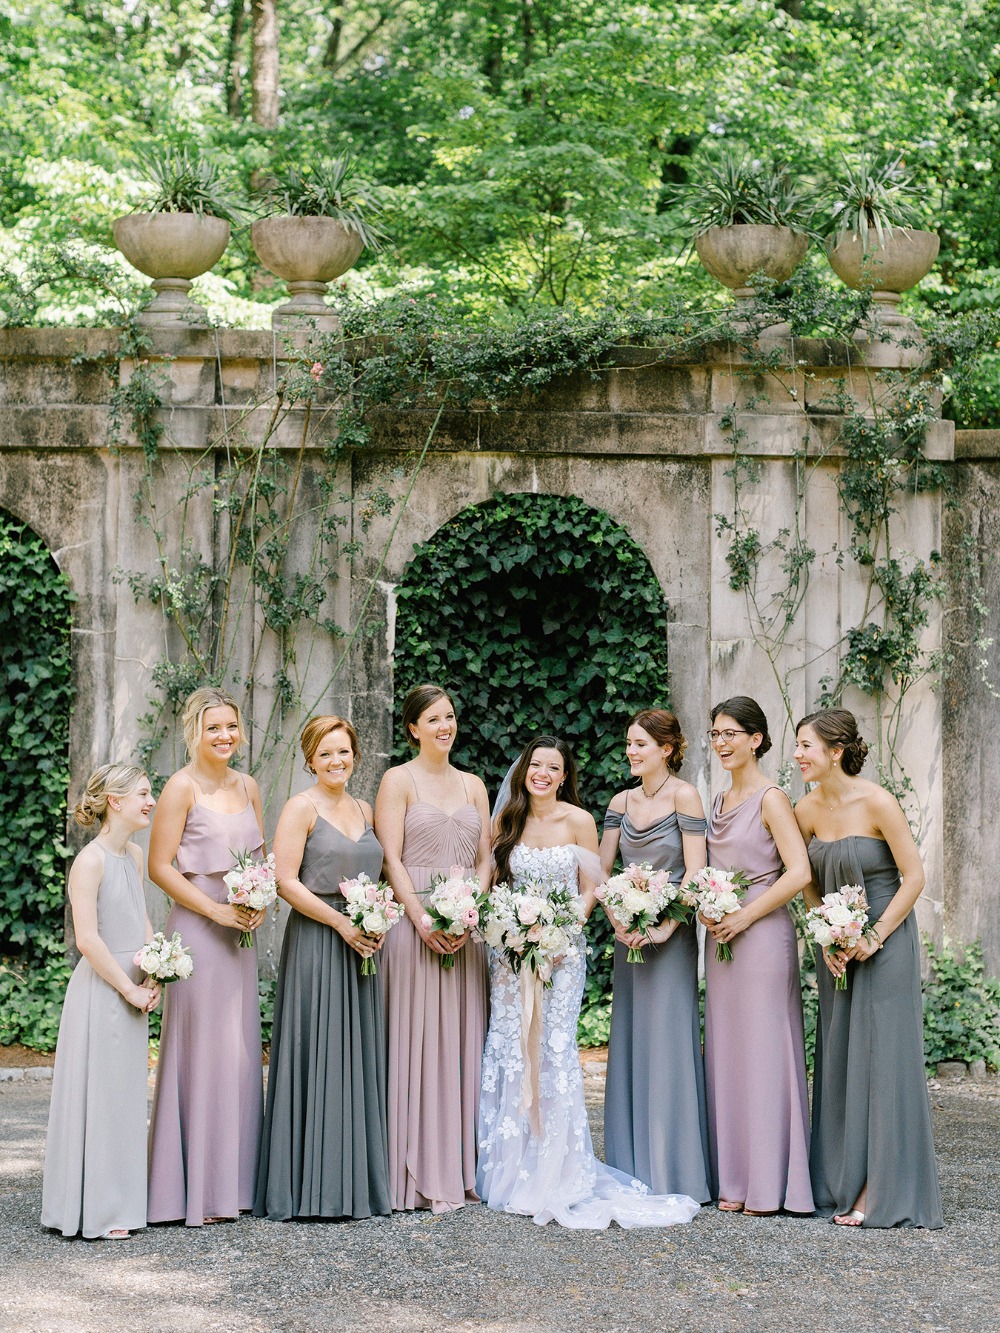 Grey and blush bridesmaid dresses